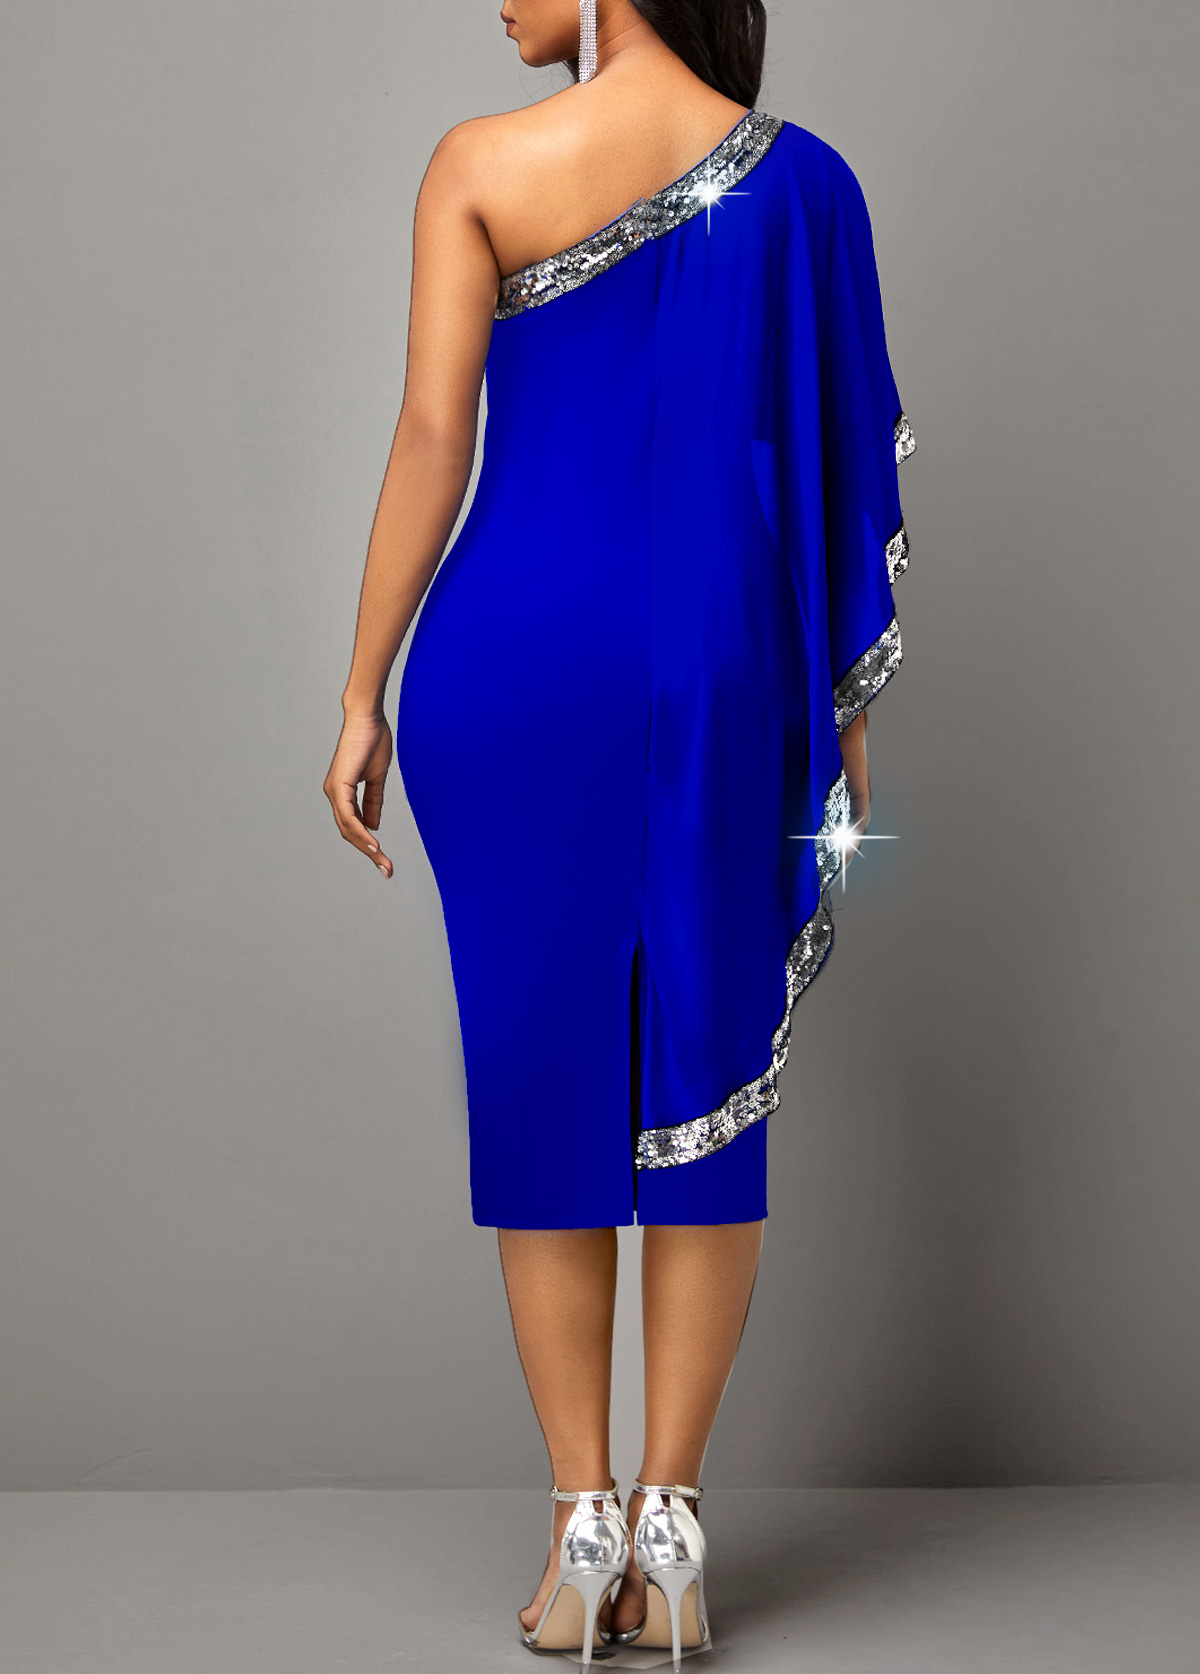 Sequin Skew Neck Royal Blue Dress